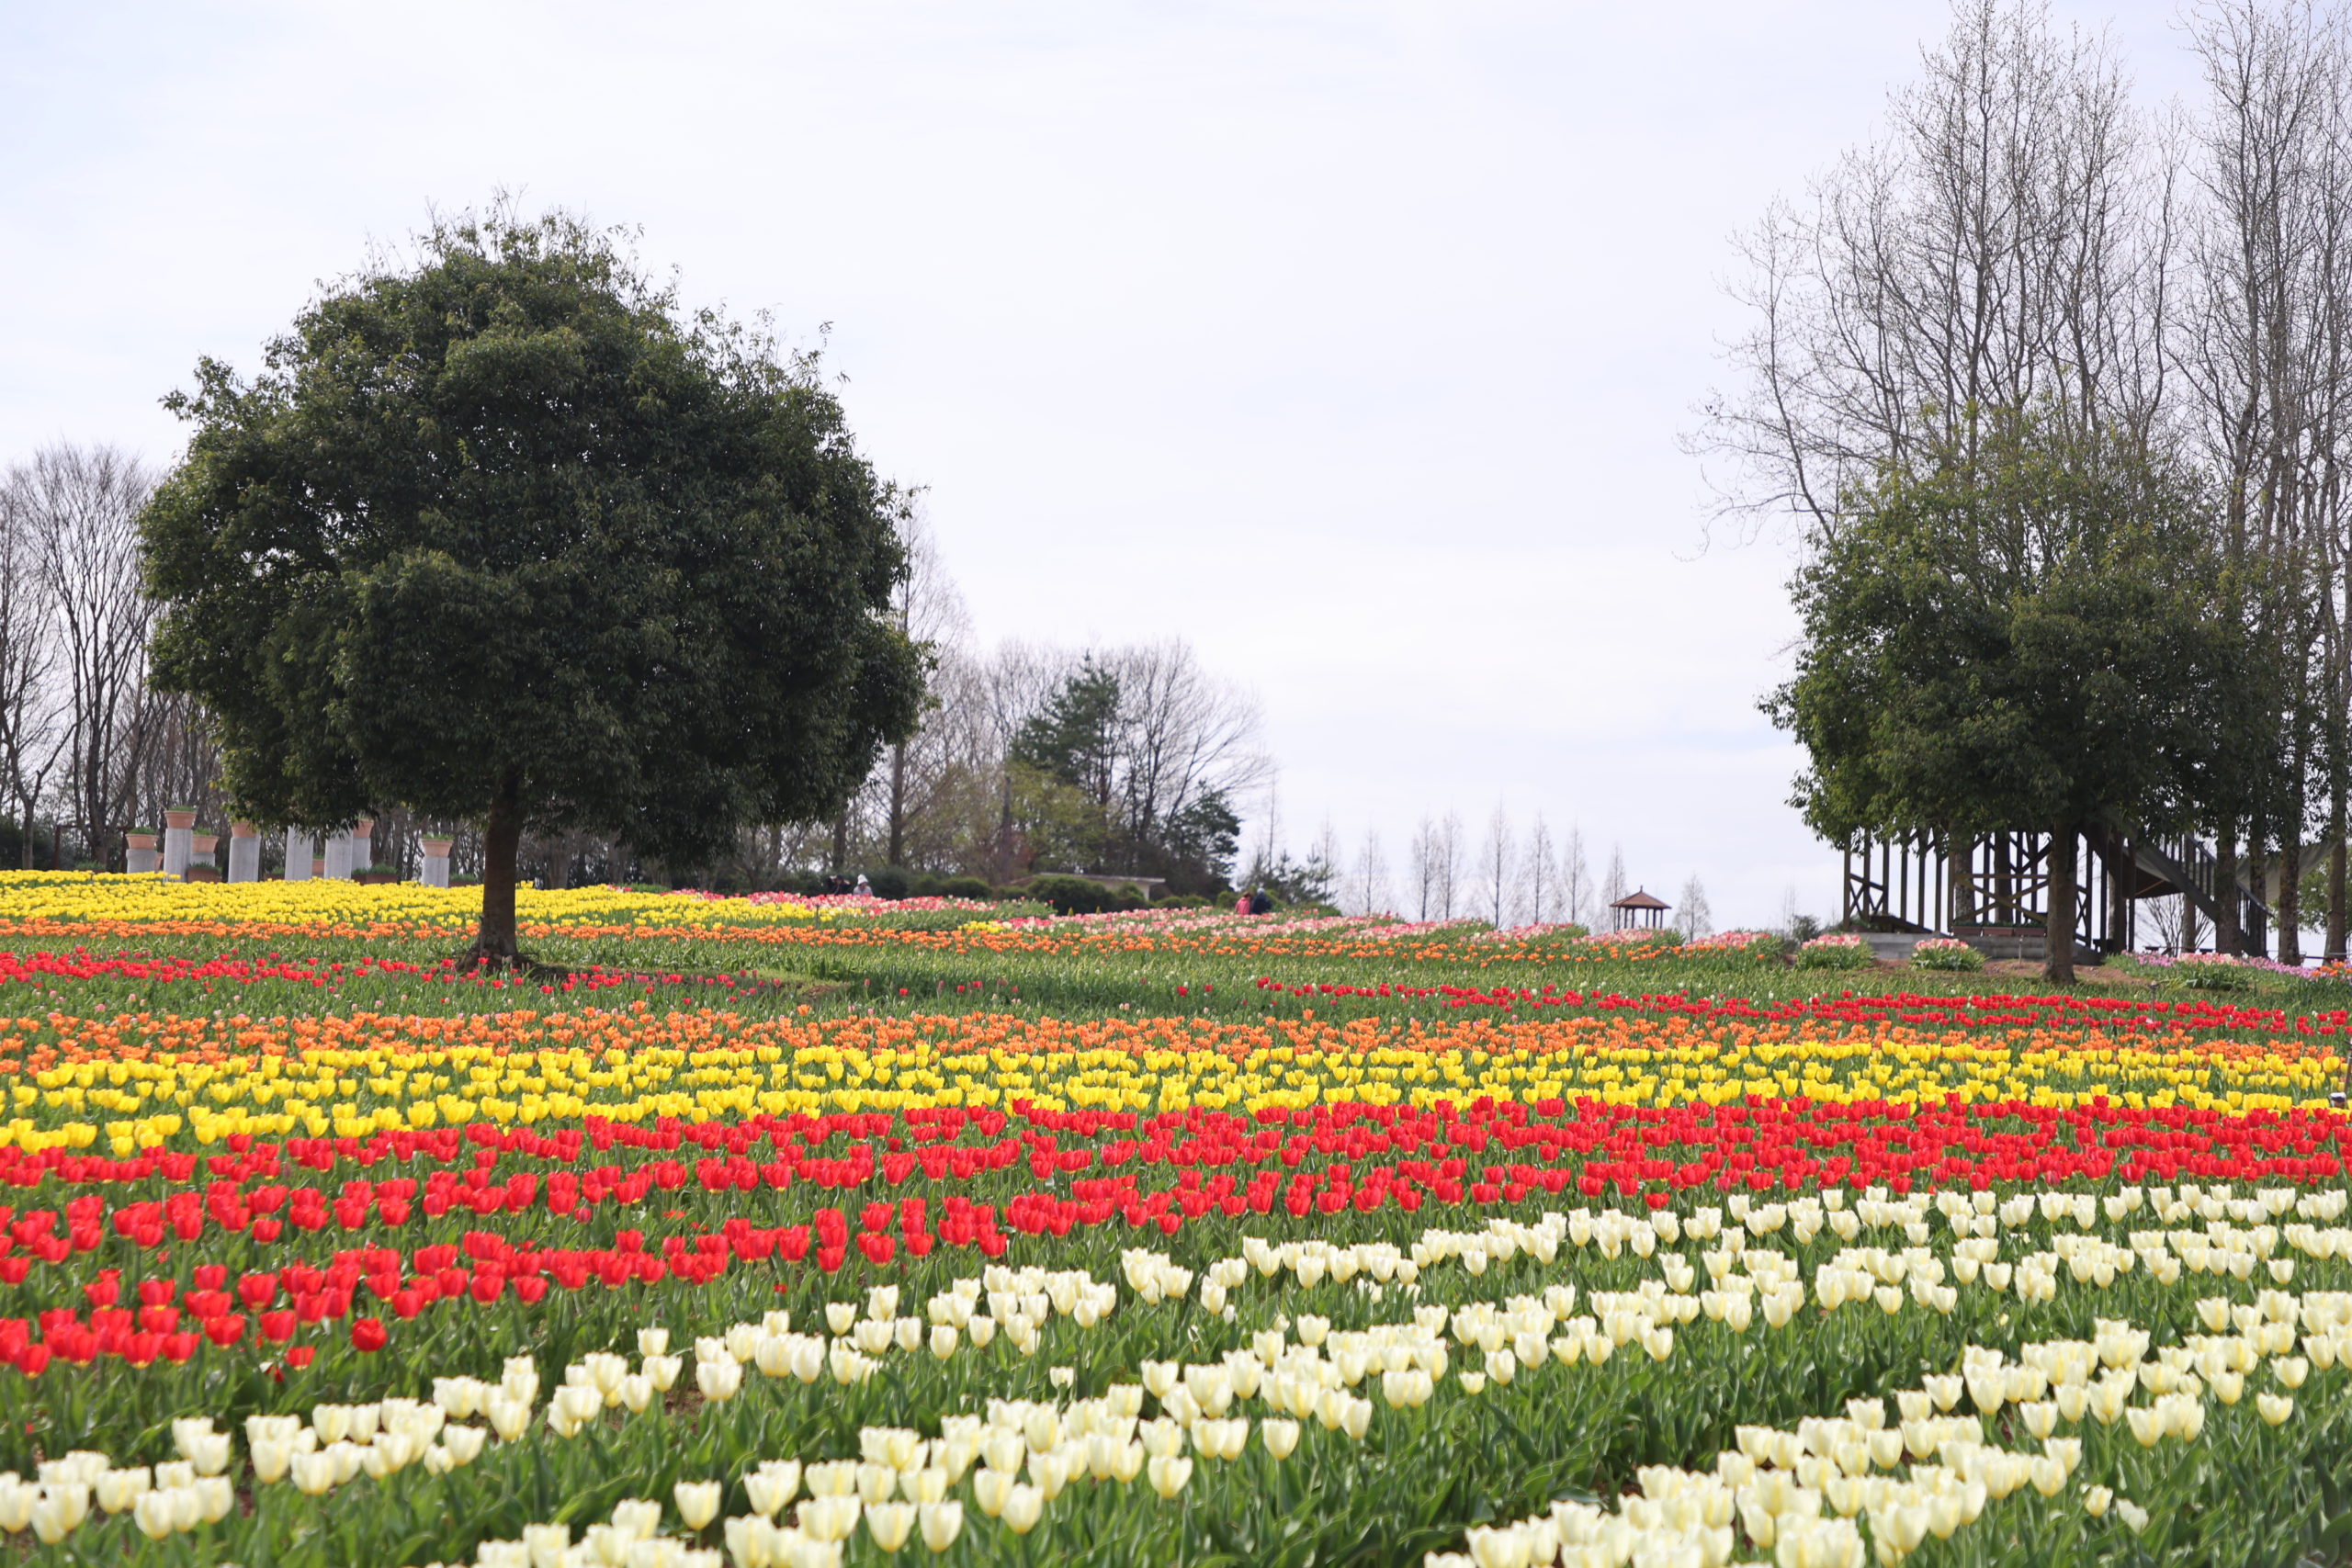 【Park open】Tulip【40-50% flowering】